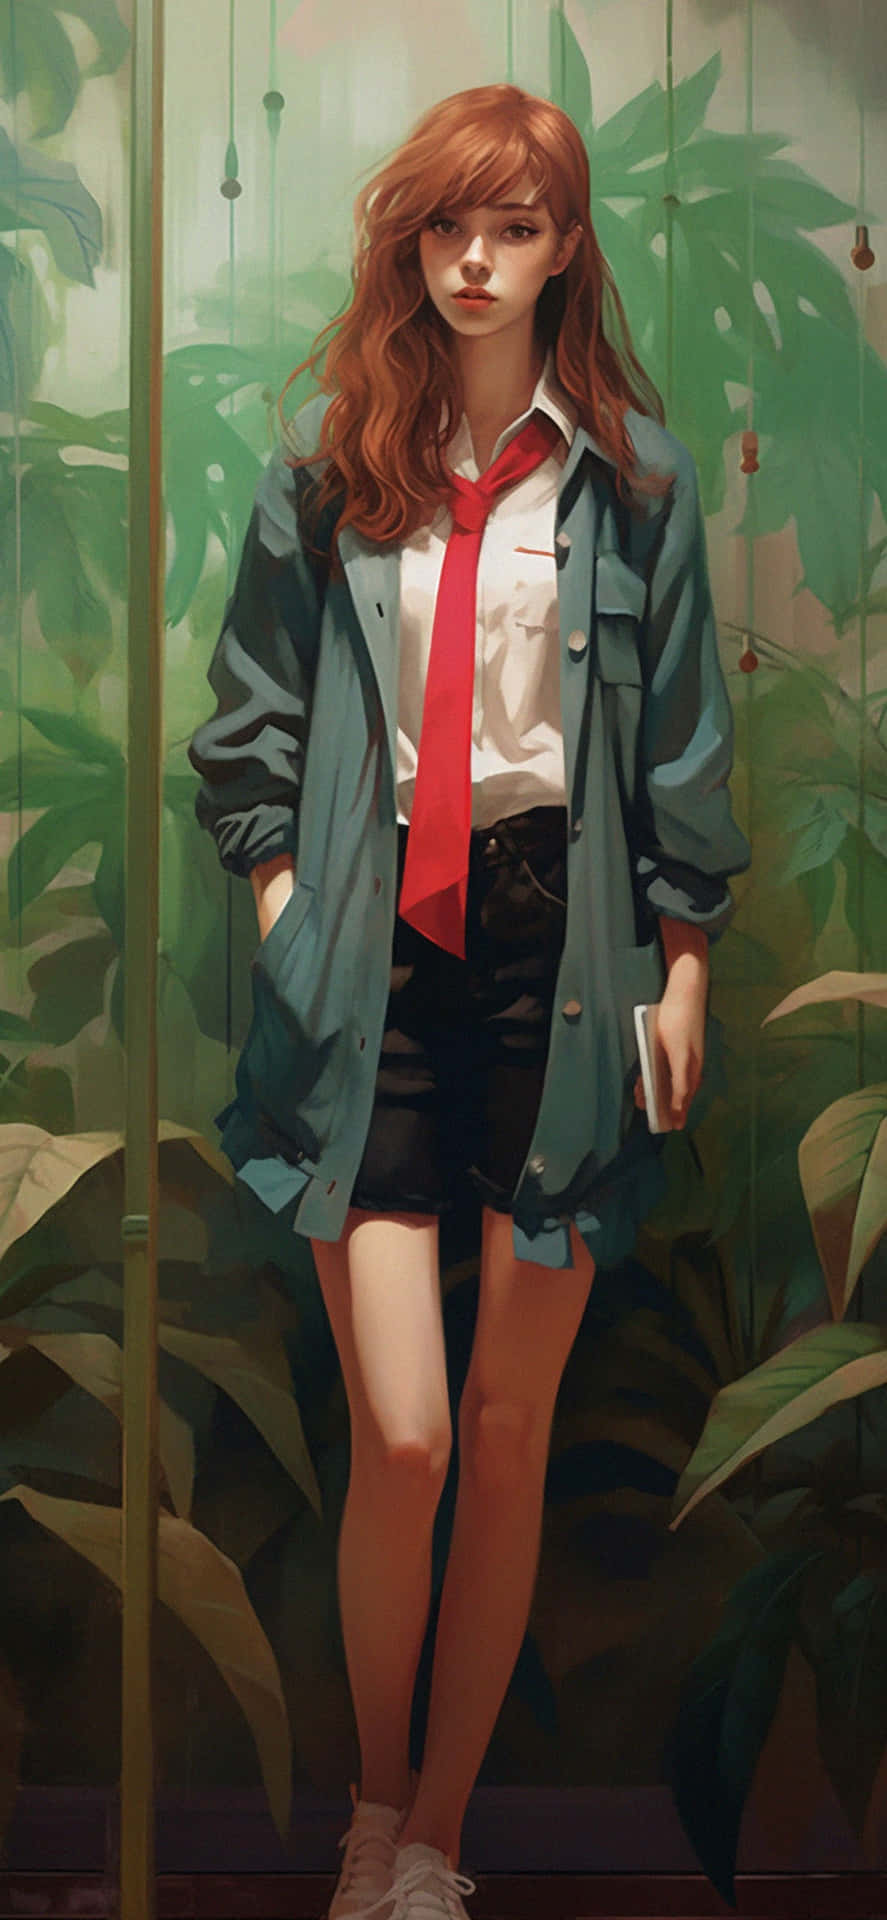 Green Preppy Style Anime Girl Wallpaper